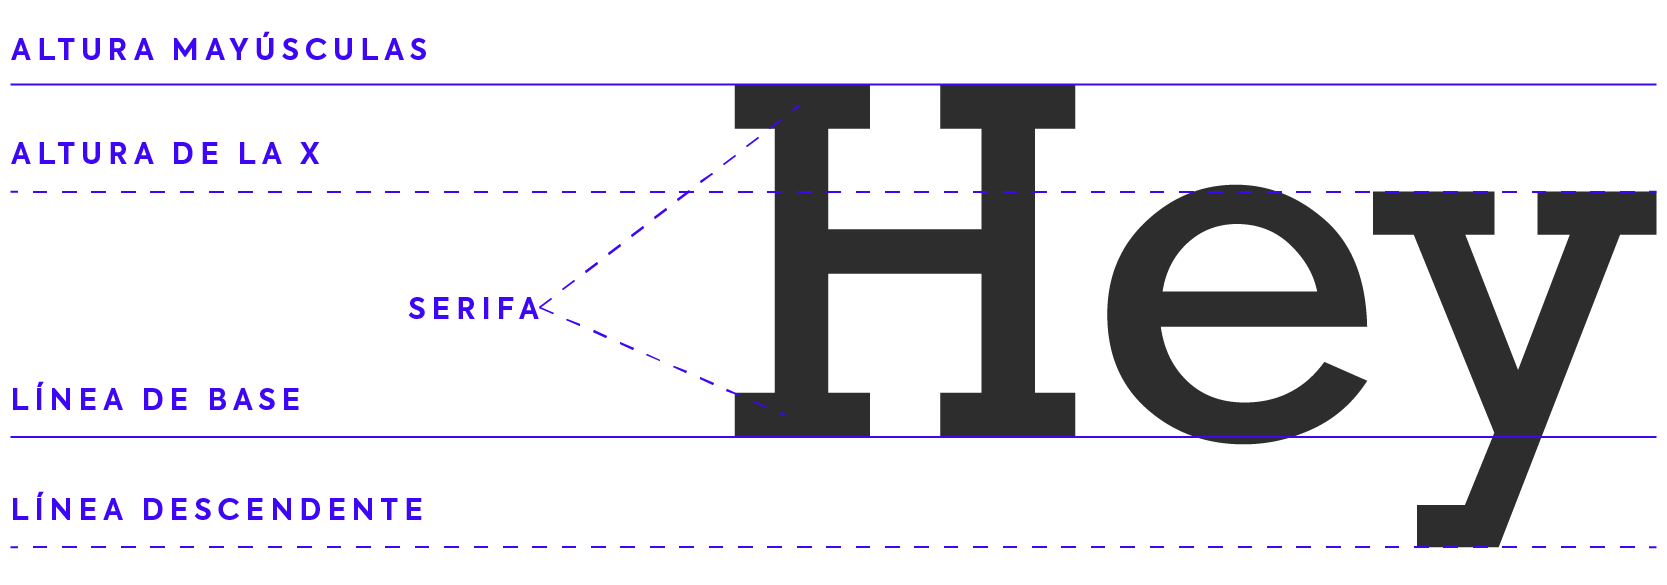 Anatomía tipográfica tipografía diseño gráfico